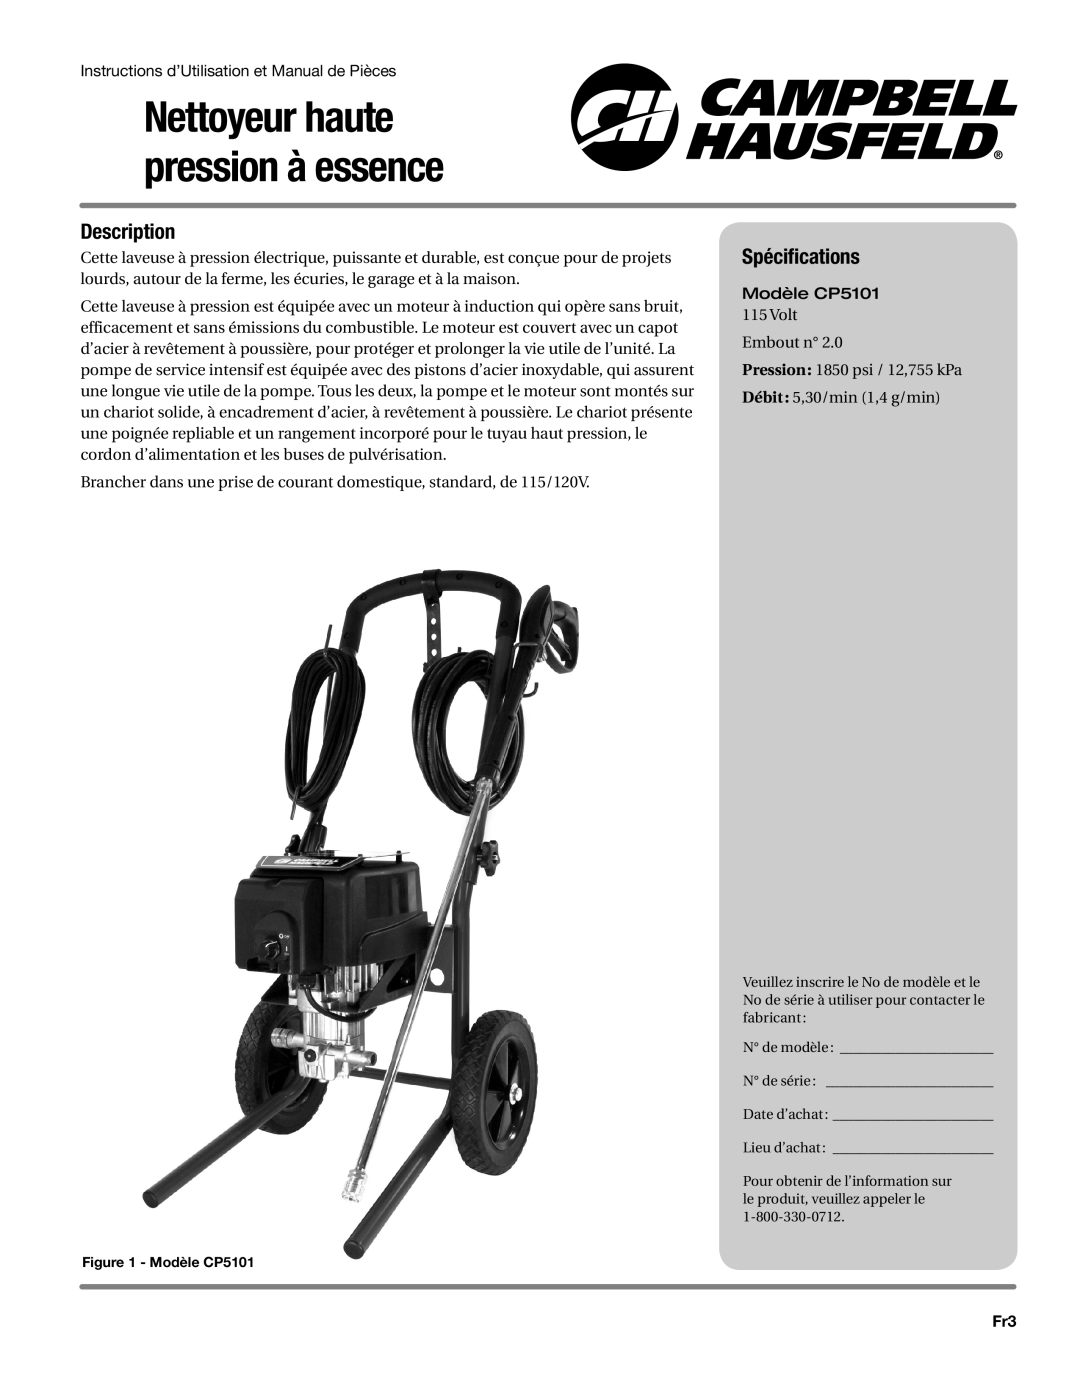 Campbell Hausfeld CP5101 manual Spécifications, Nettoyeur haute pression à essence, Description 